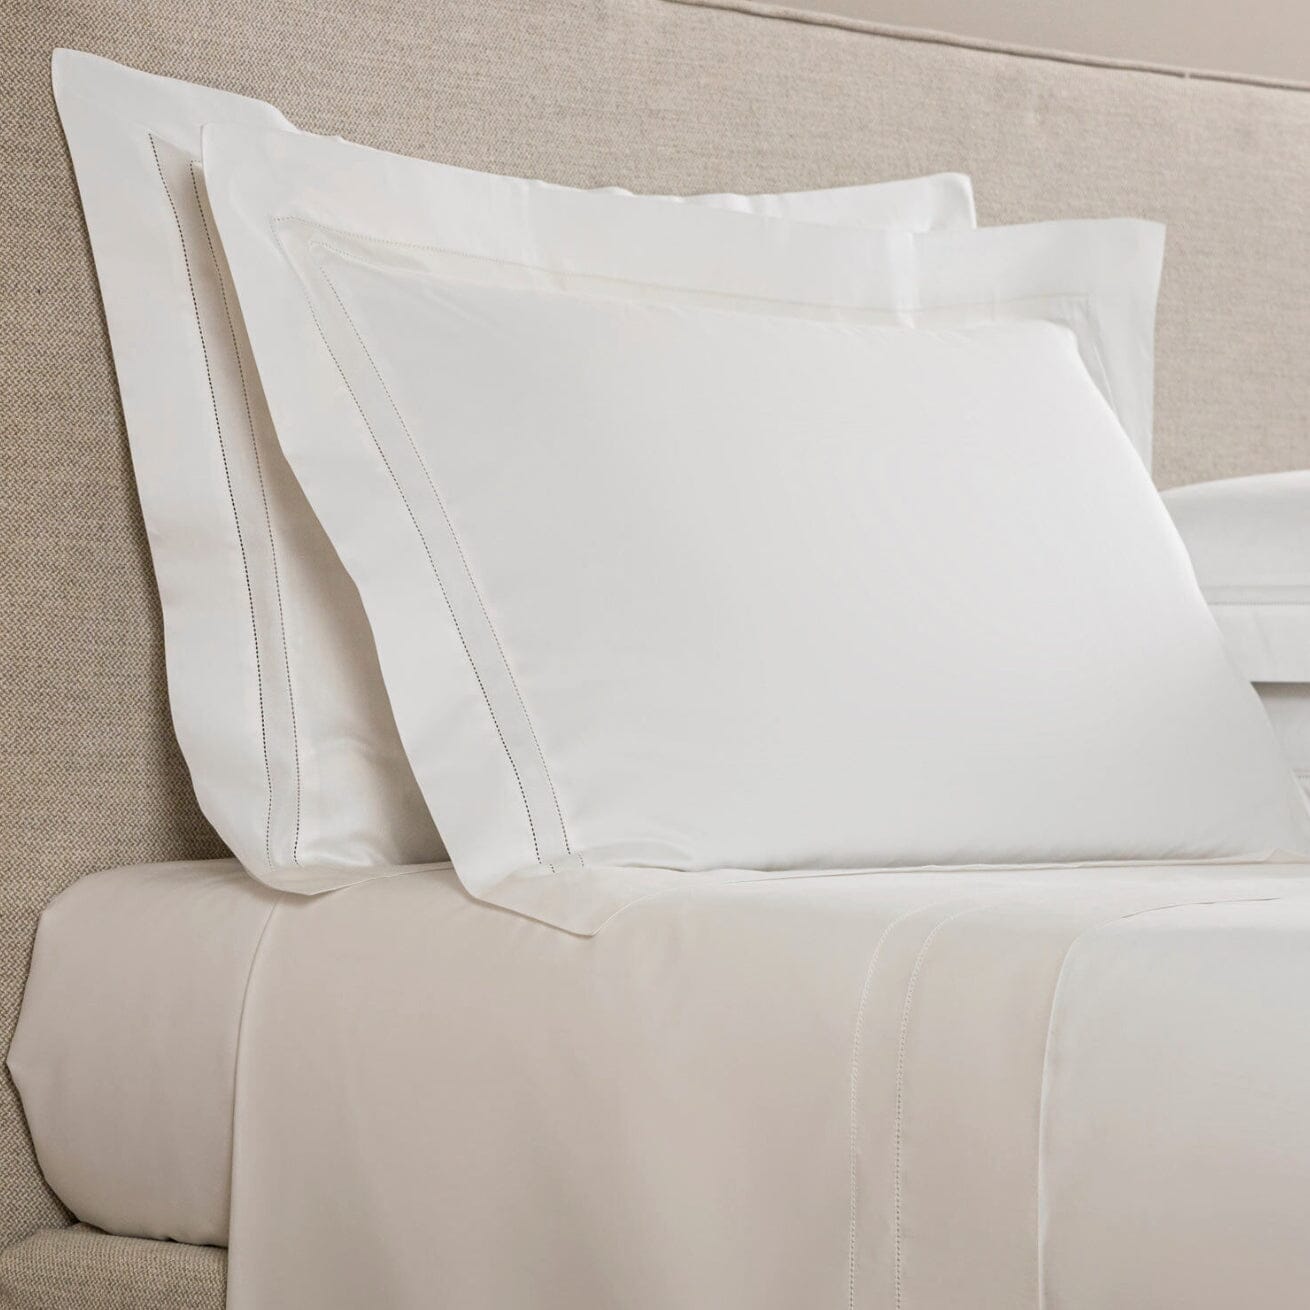 Bedding - Frette Doppio Ajour Standard Sham or King Sham in White - Fig Linens and Home